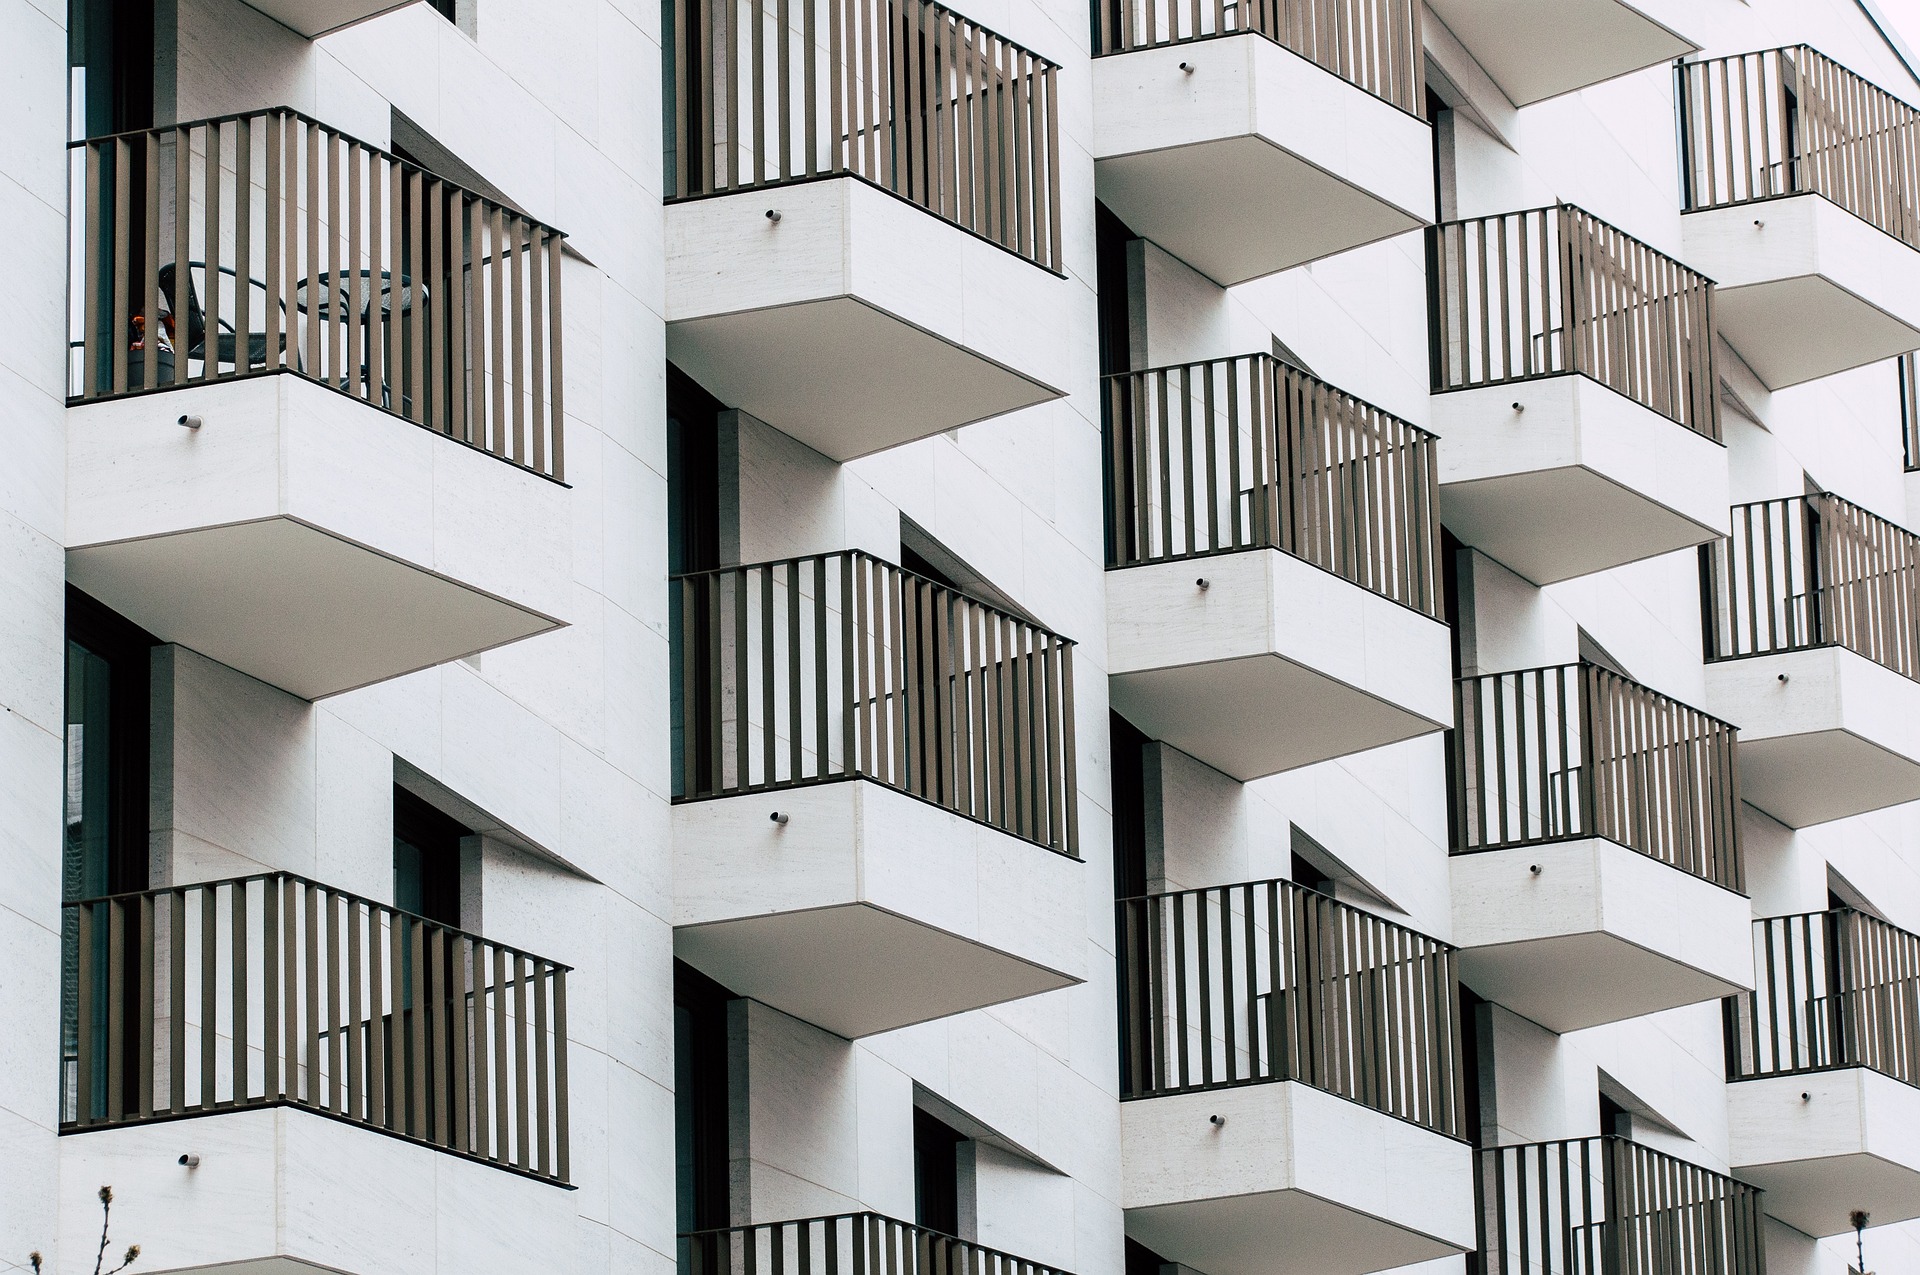 Klientów kupujących mieszkania na kredyt praktycznie nie ma (fot. pixabay)